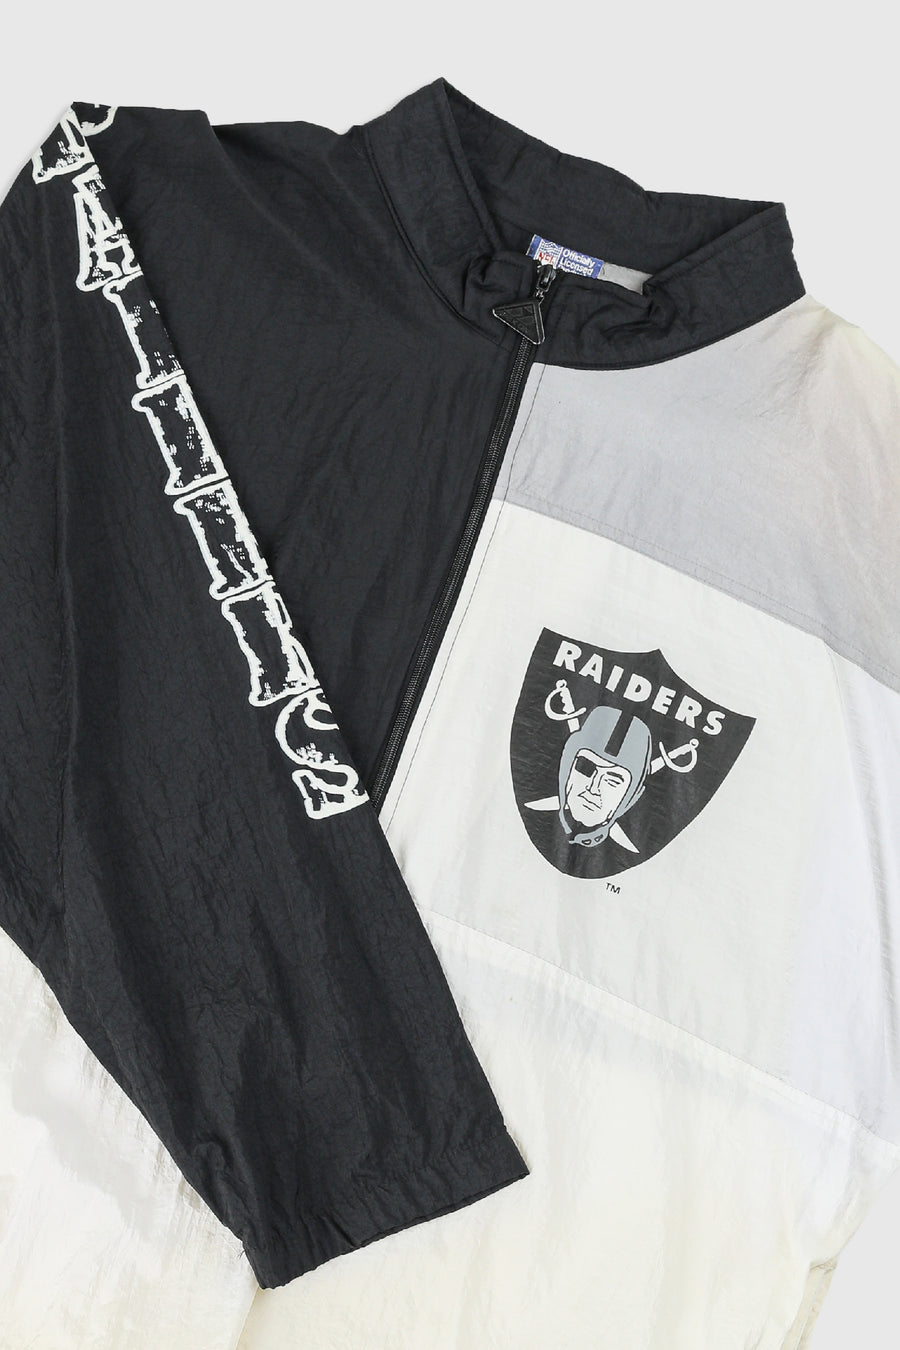 Vintage Raiders NFL Windbreaker Jacket - XL